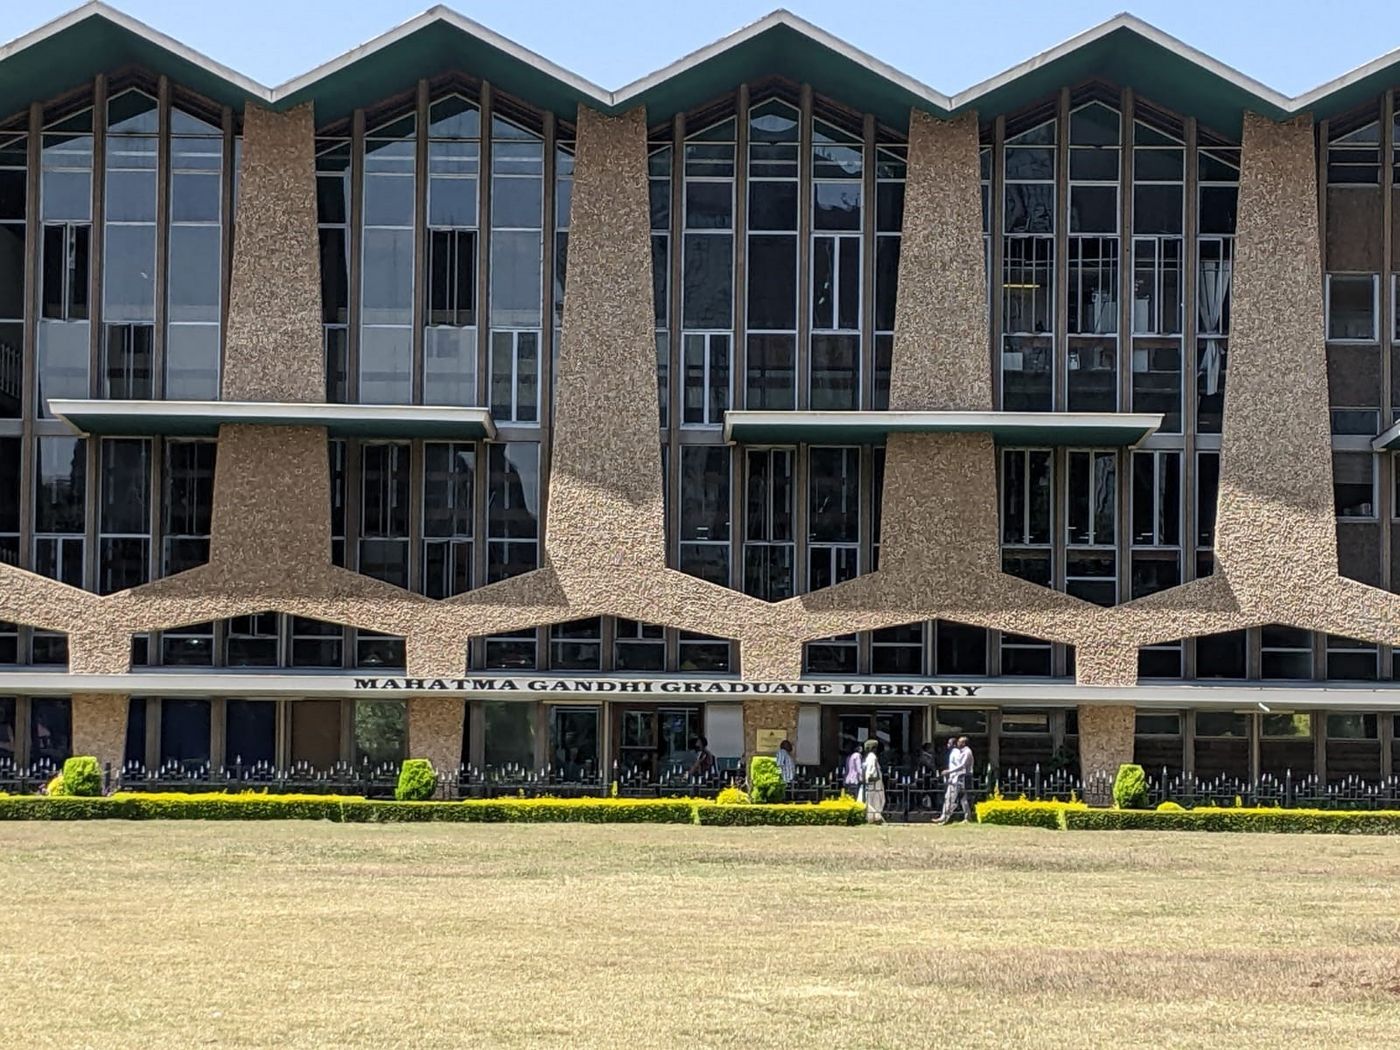 Ghandi Memorial Bibliothek in Nairobi